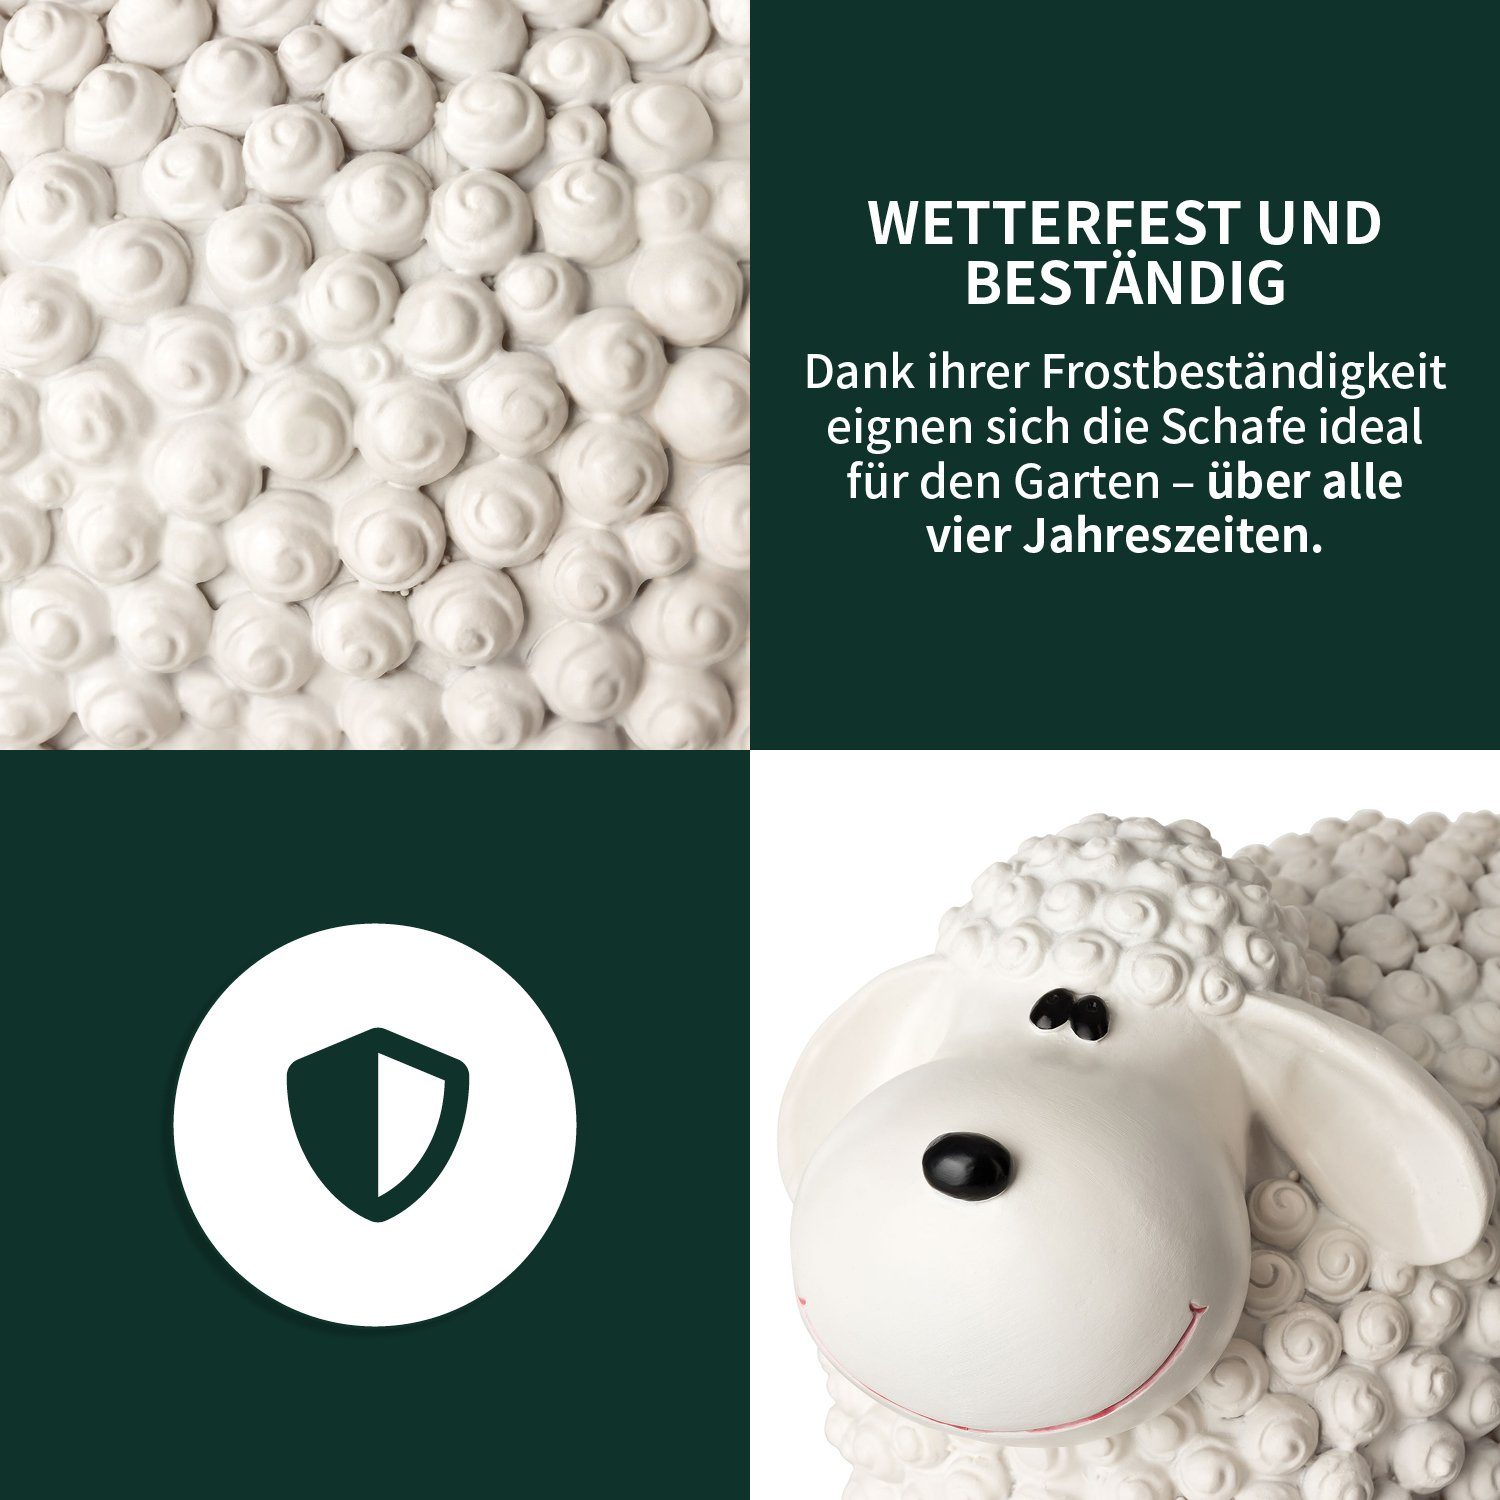 Wetterfeste Weiß Mini - Schaf Gartendeko Außen, Schaf VERDOBA - Deko Gartenfigur Gartenfigur für Polyresin